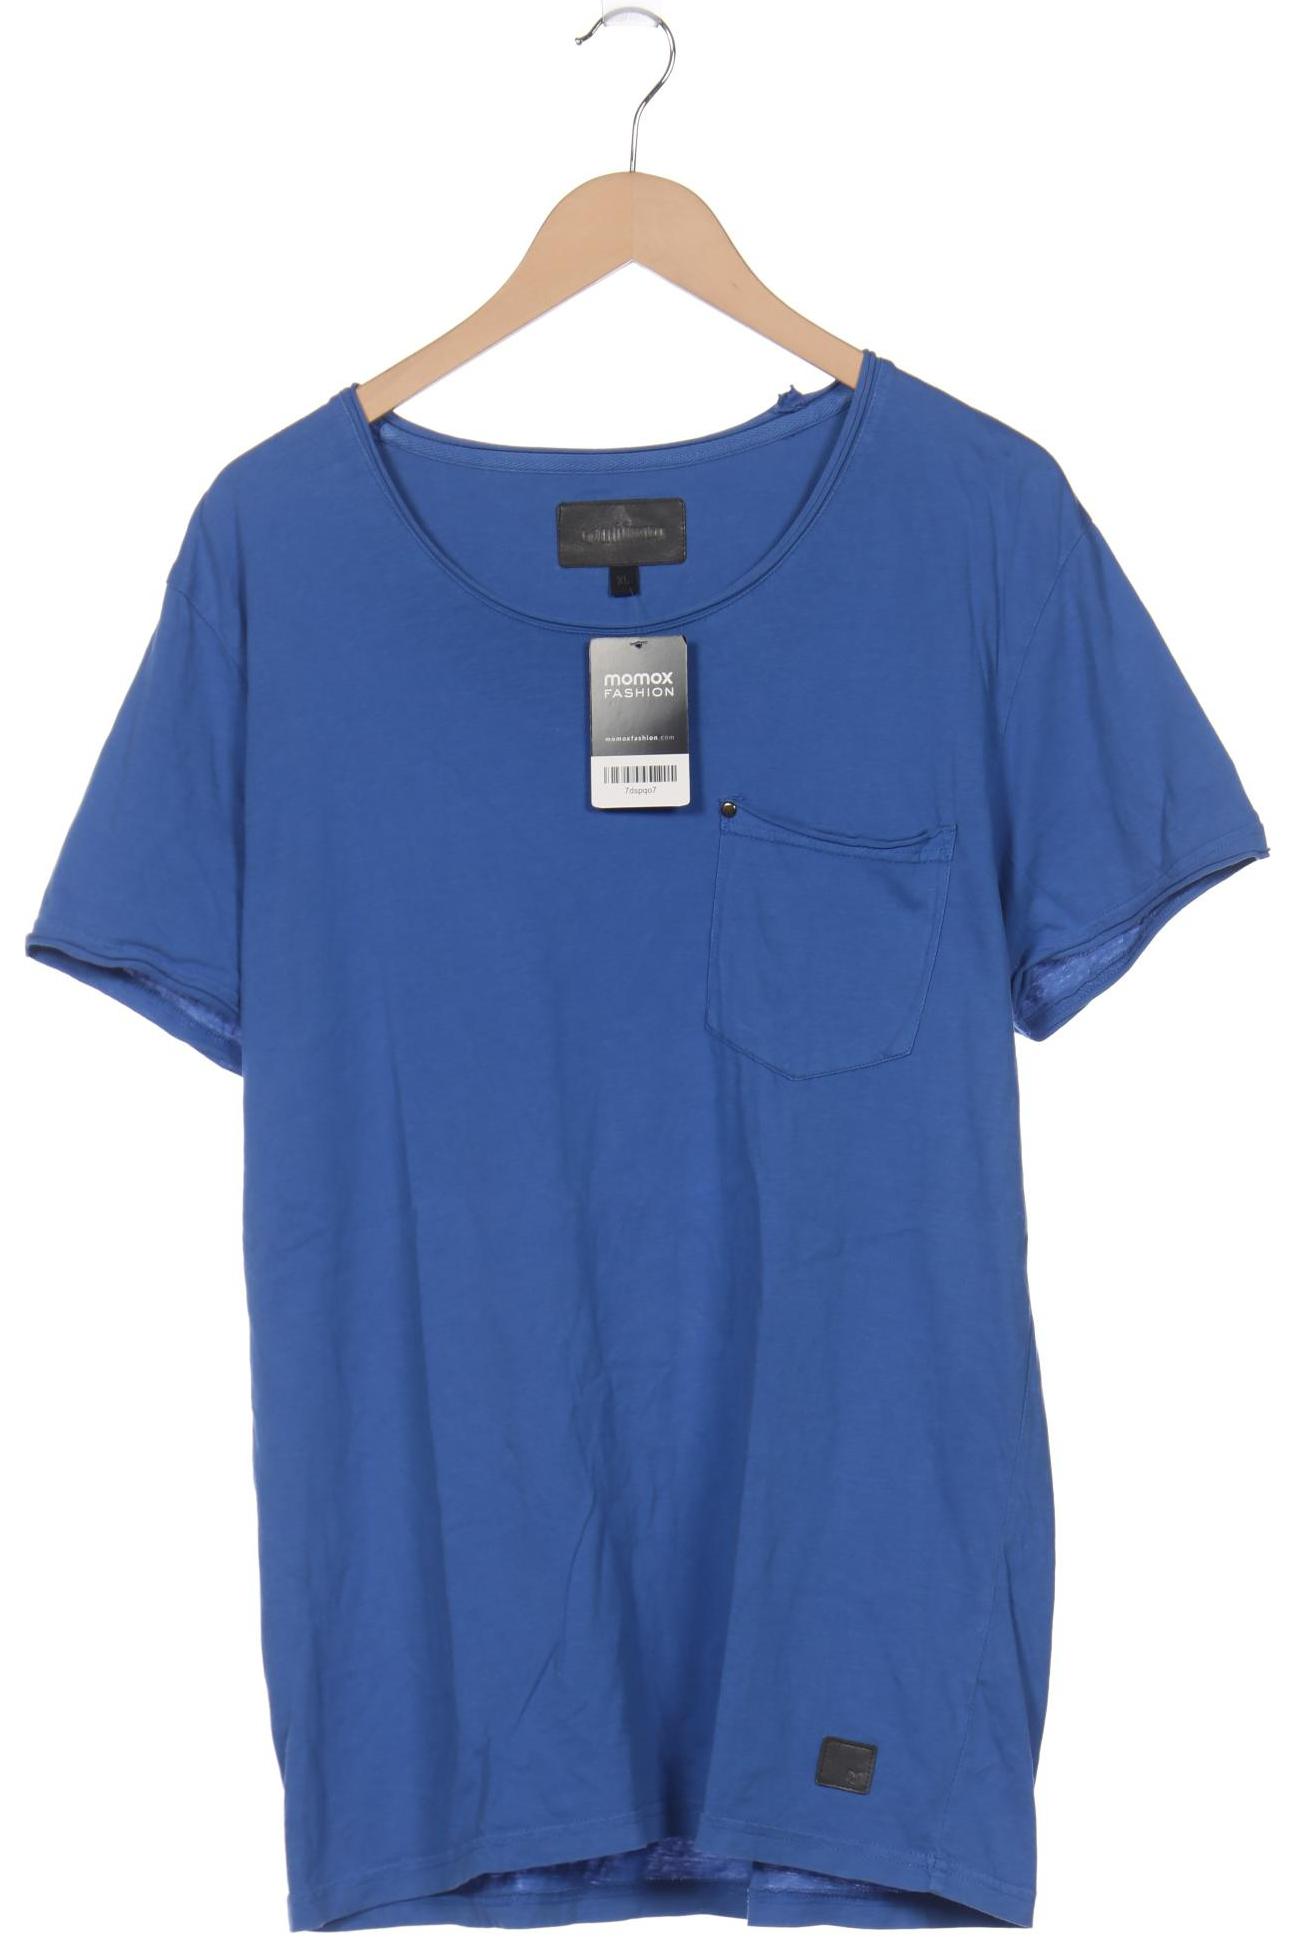 Minimum Herren T-Shirt, blau, Gr. 54 von Minimum